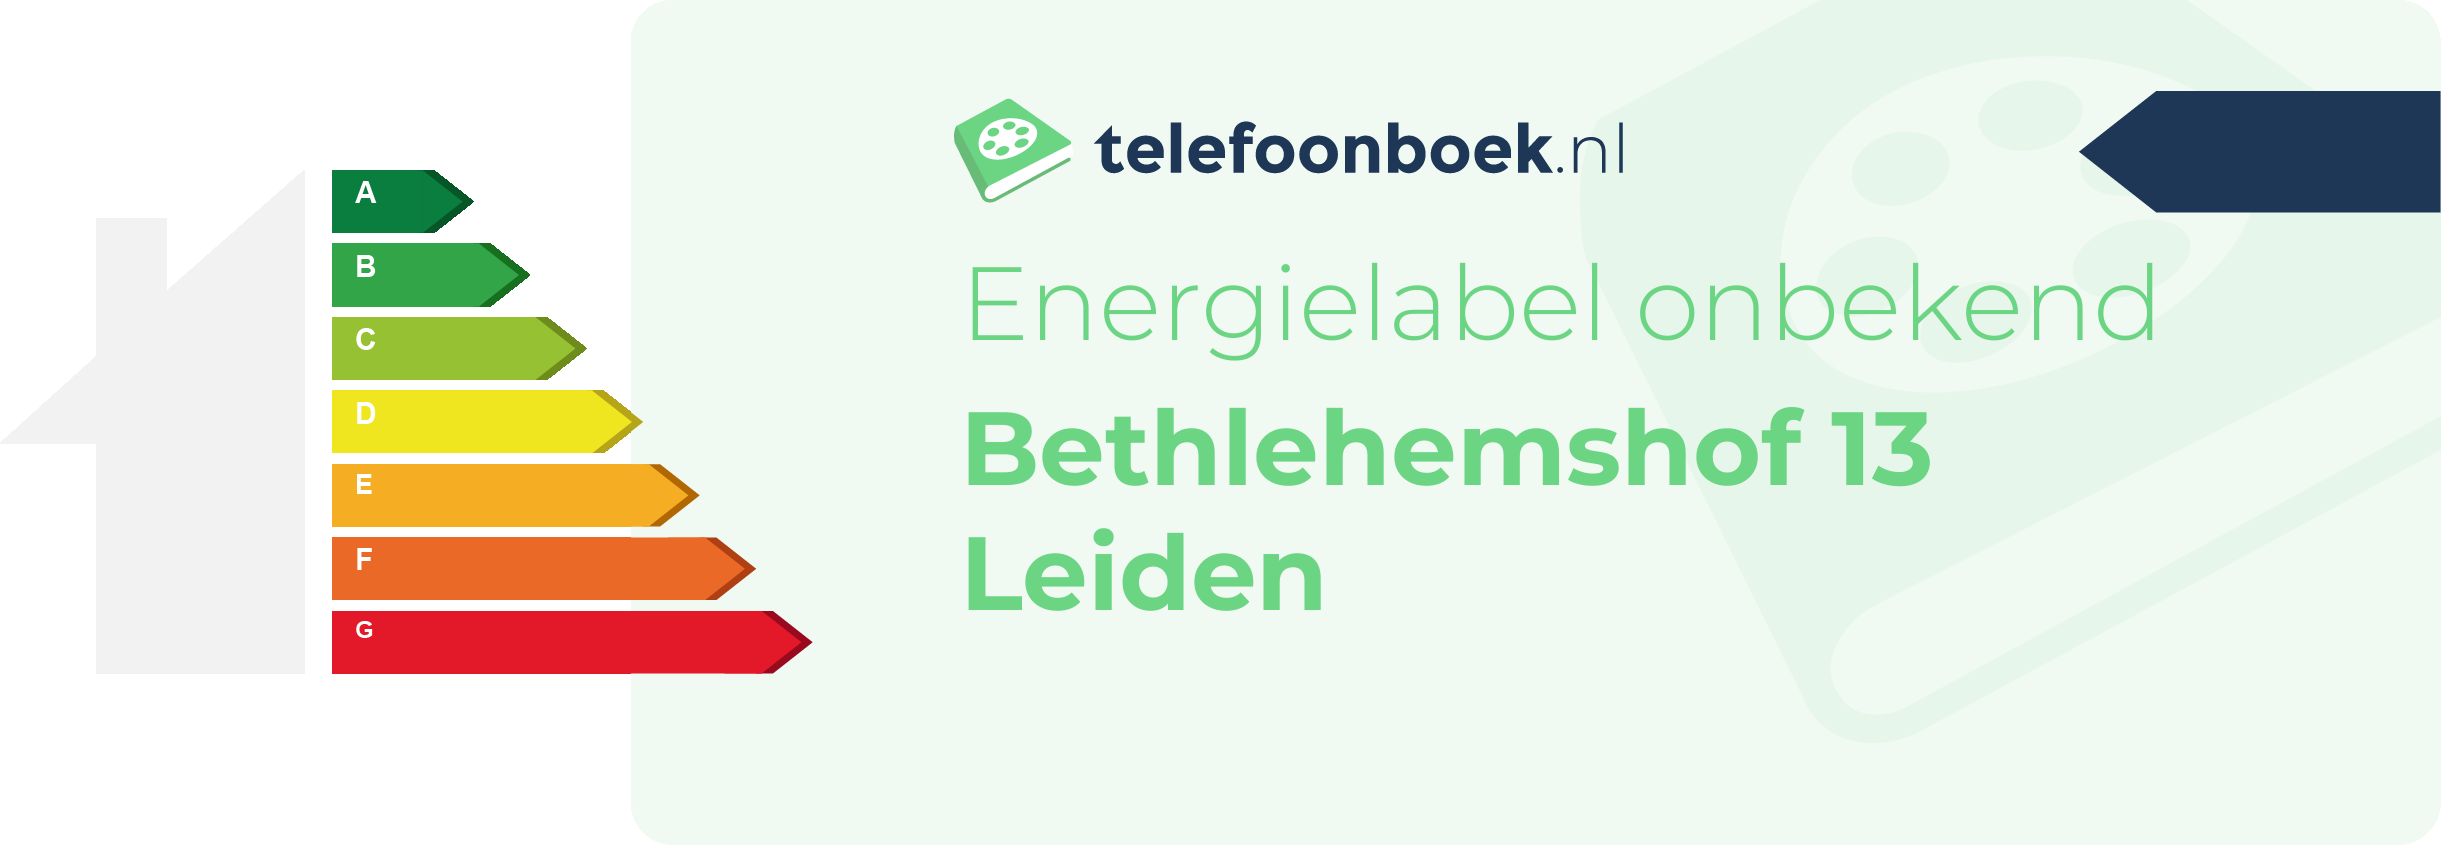 Energielabel Bethlehemshof 13 Leiden